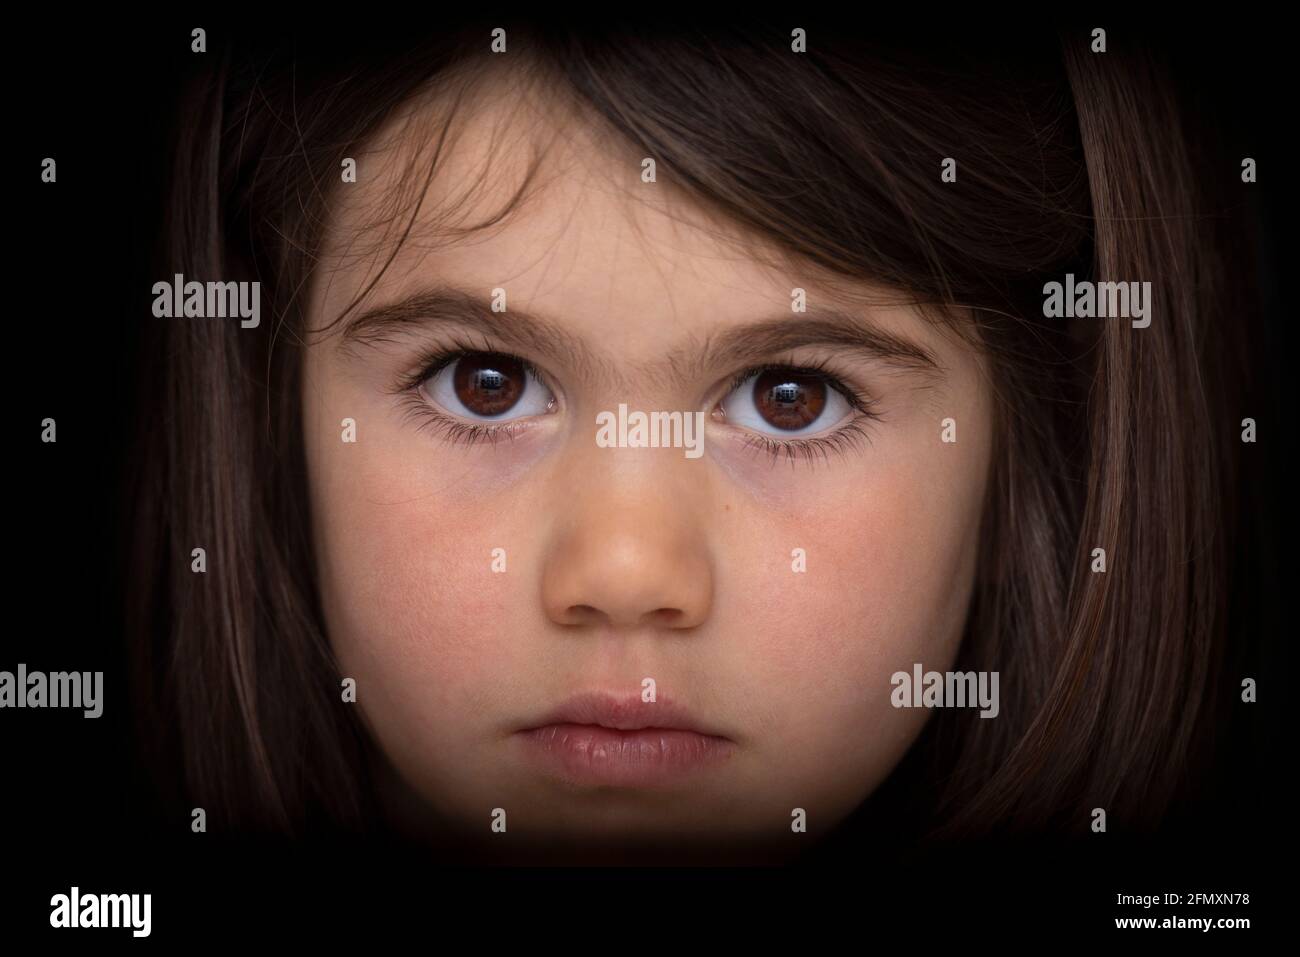 Portrait d'une jeune fille de quatre ans à l'aspect sérieux. Regard intense. Banque D'Images